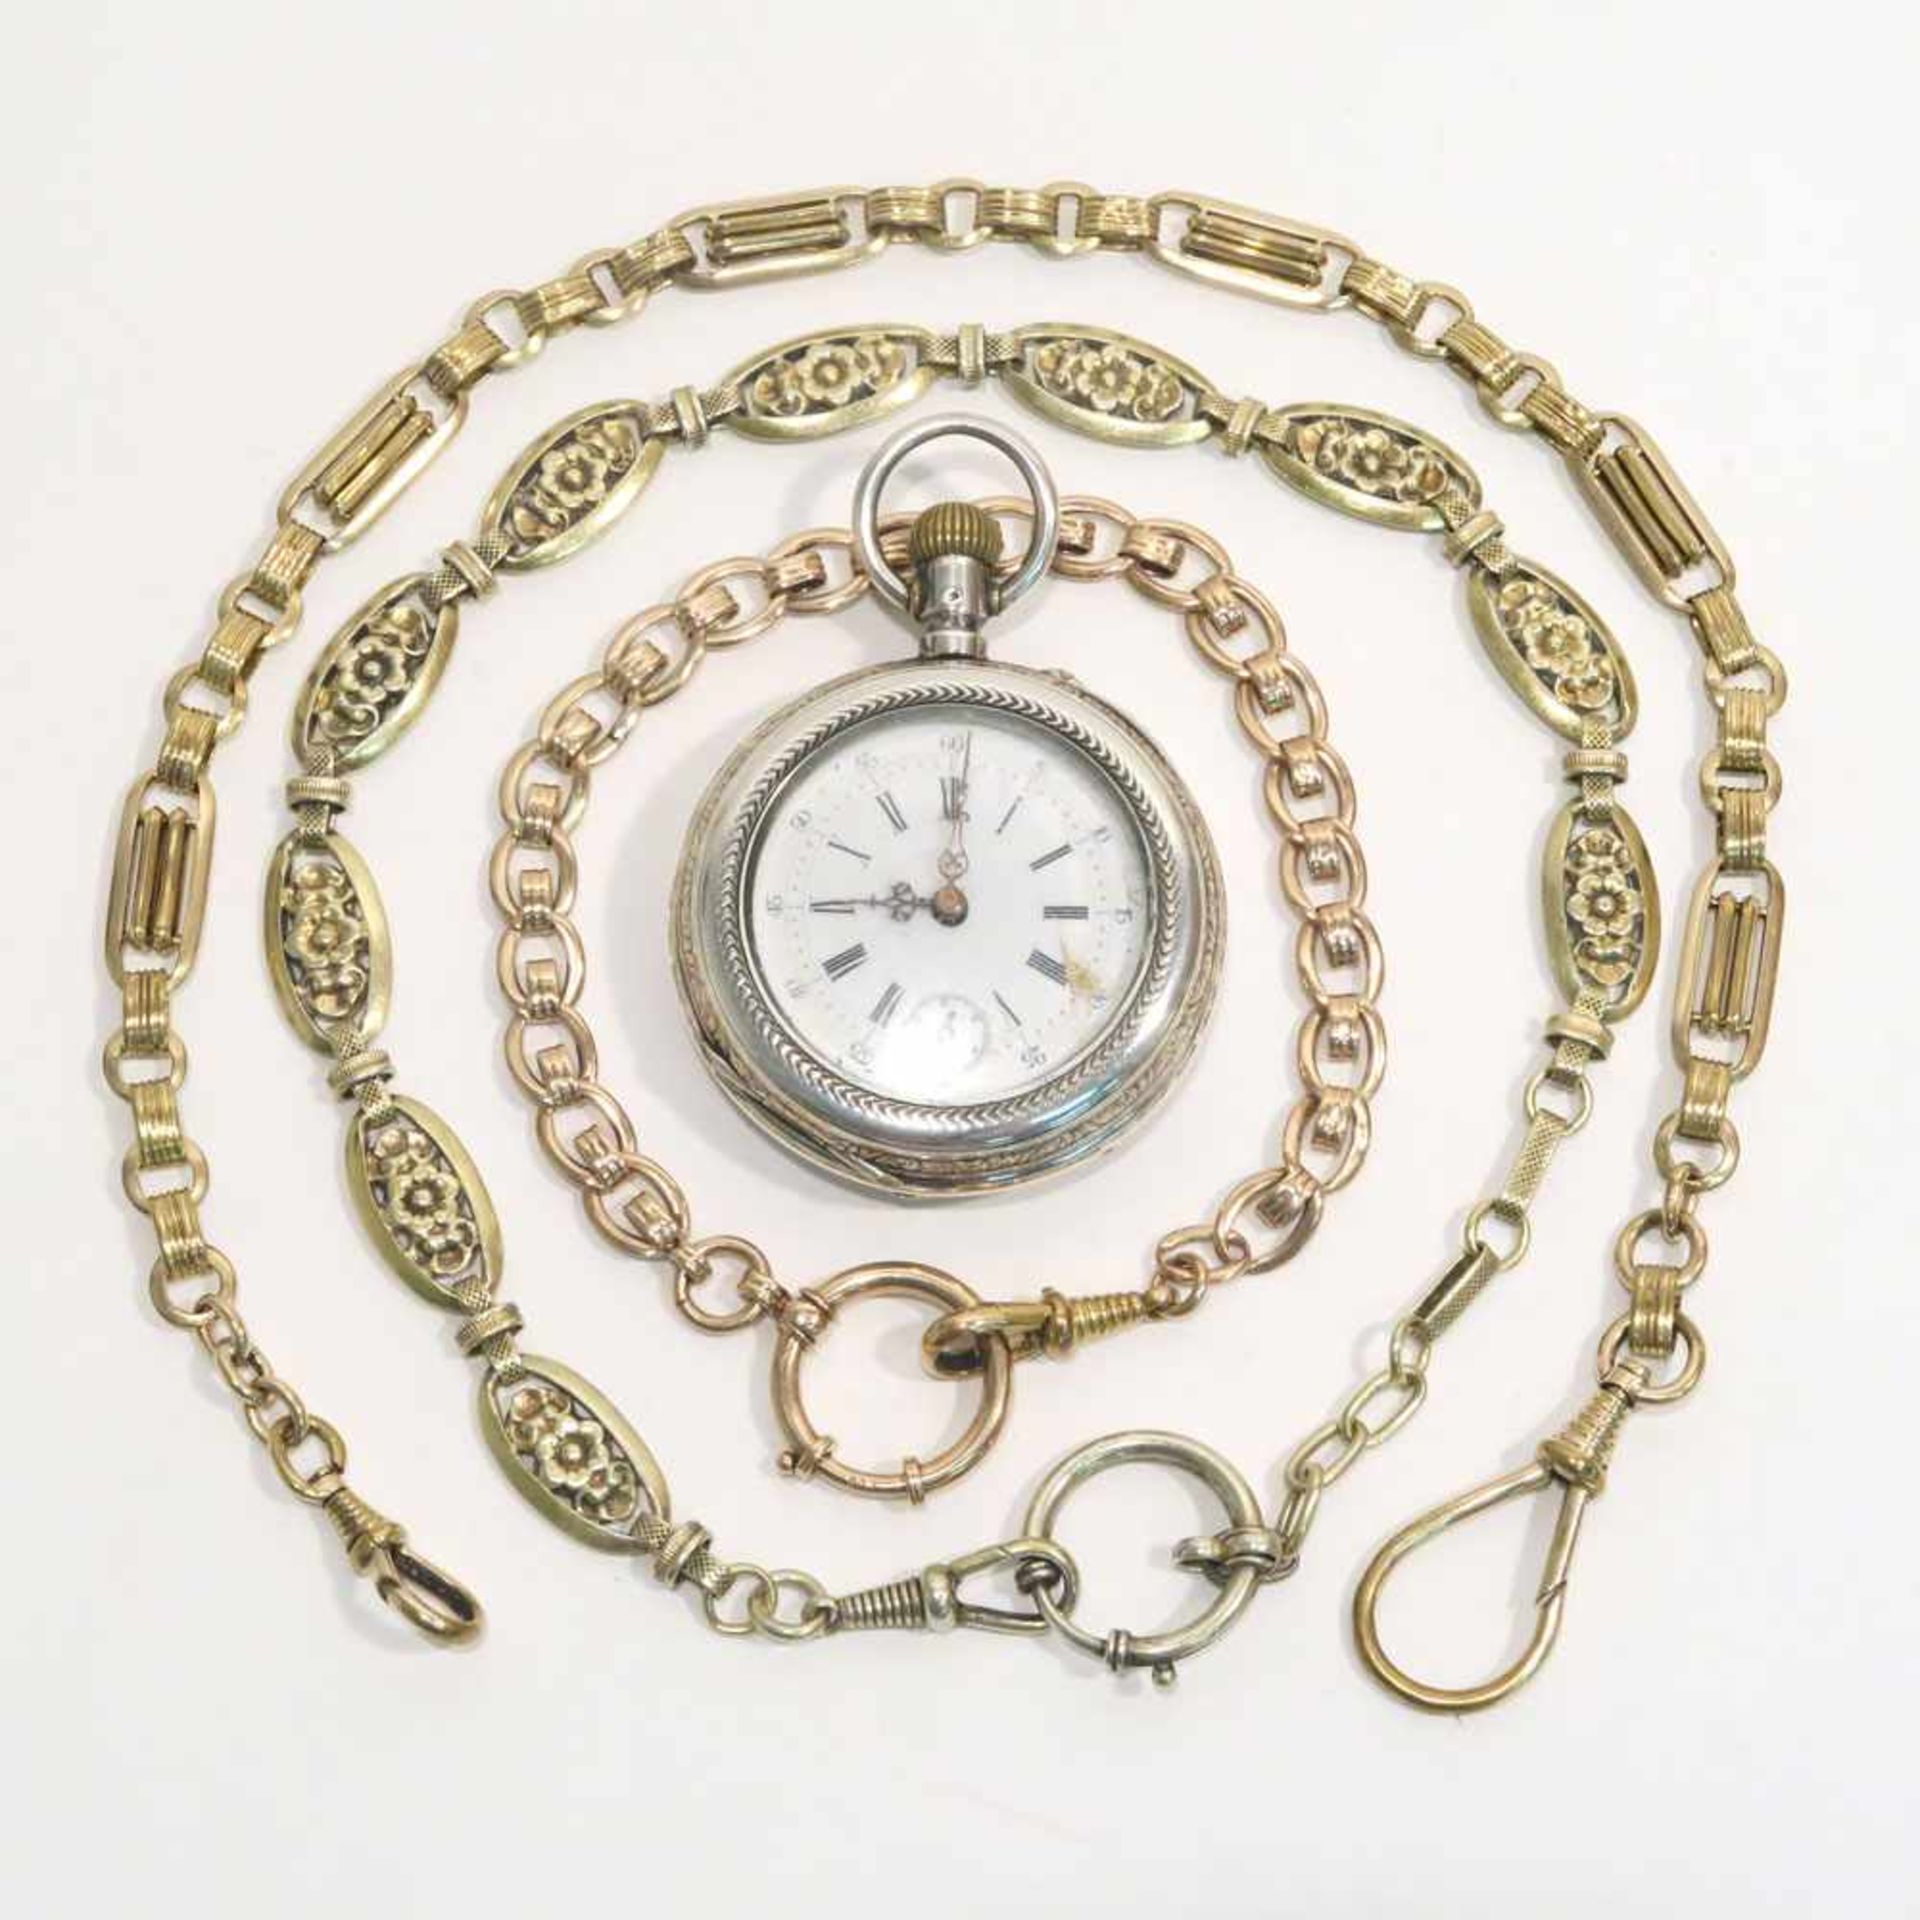 Taschenuhr und zwei UhrenkettenSchweiz, um 1882 - 1934. Silber, tlw. Marken (800, u.a.), tlw.